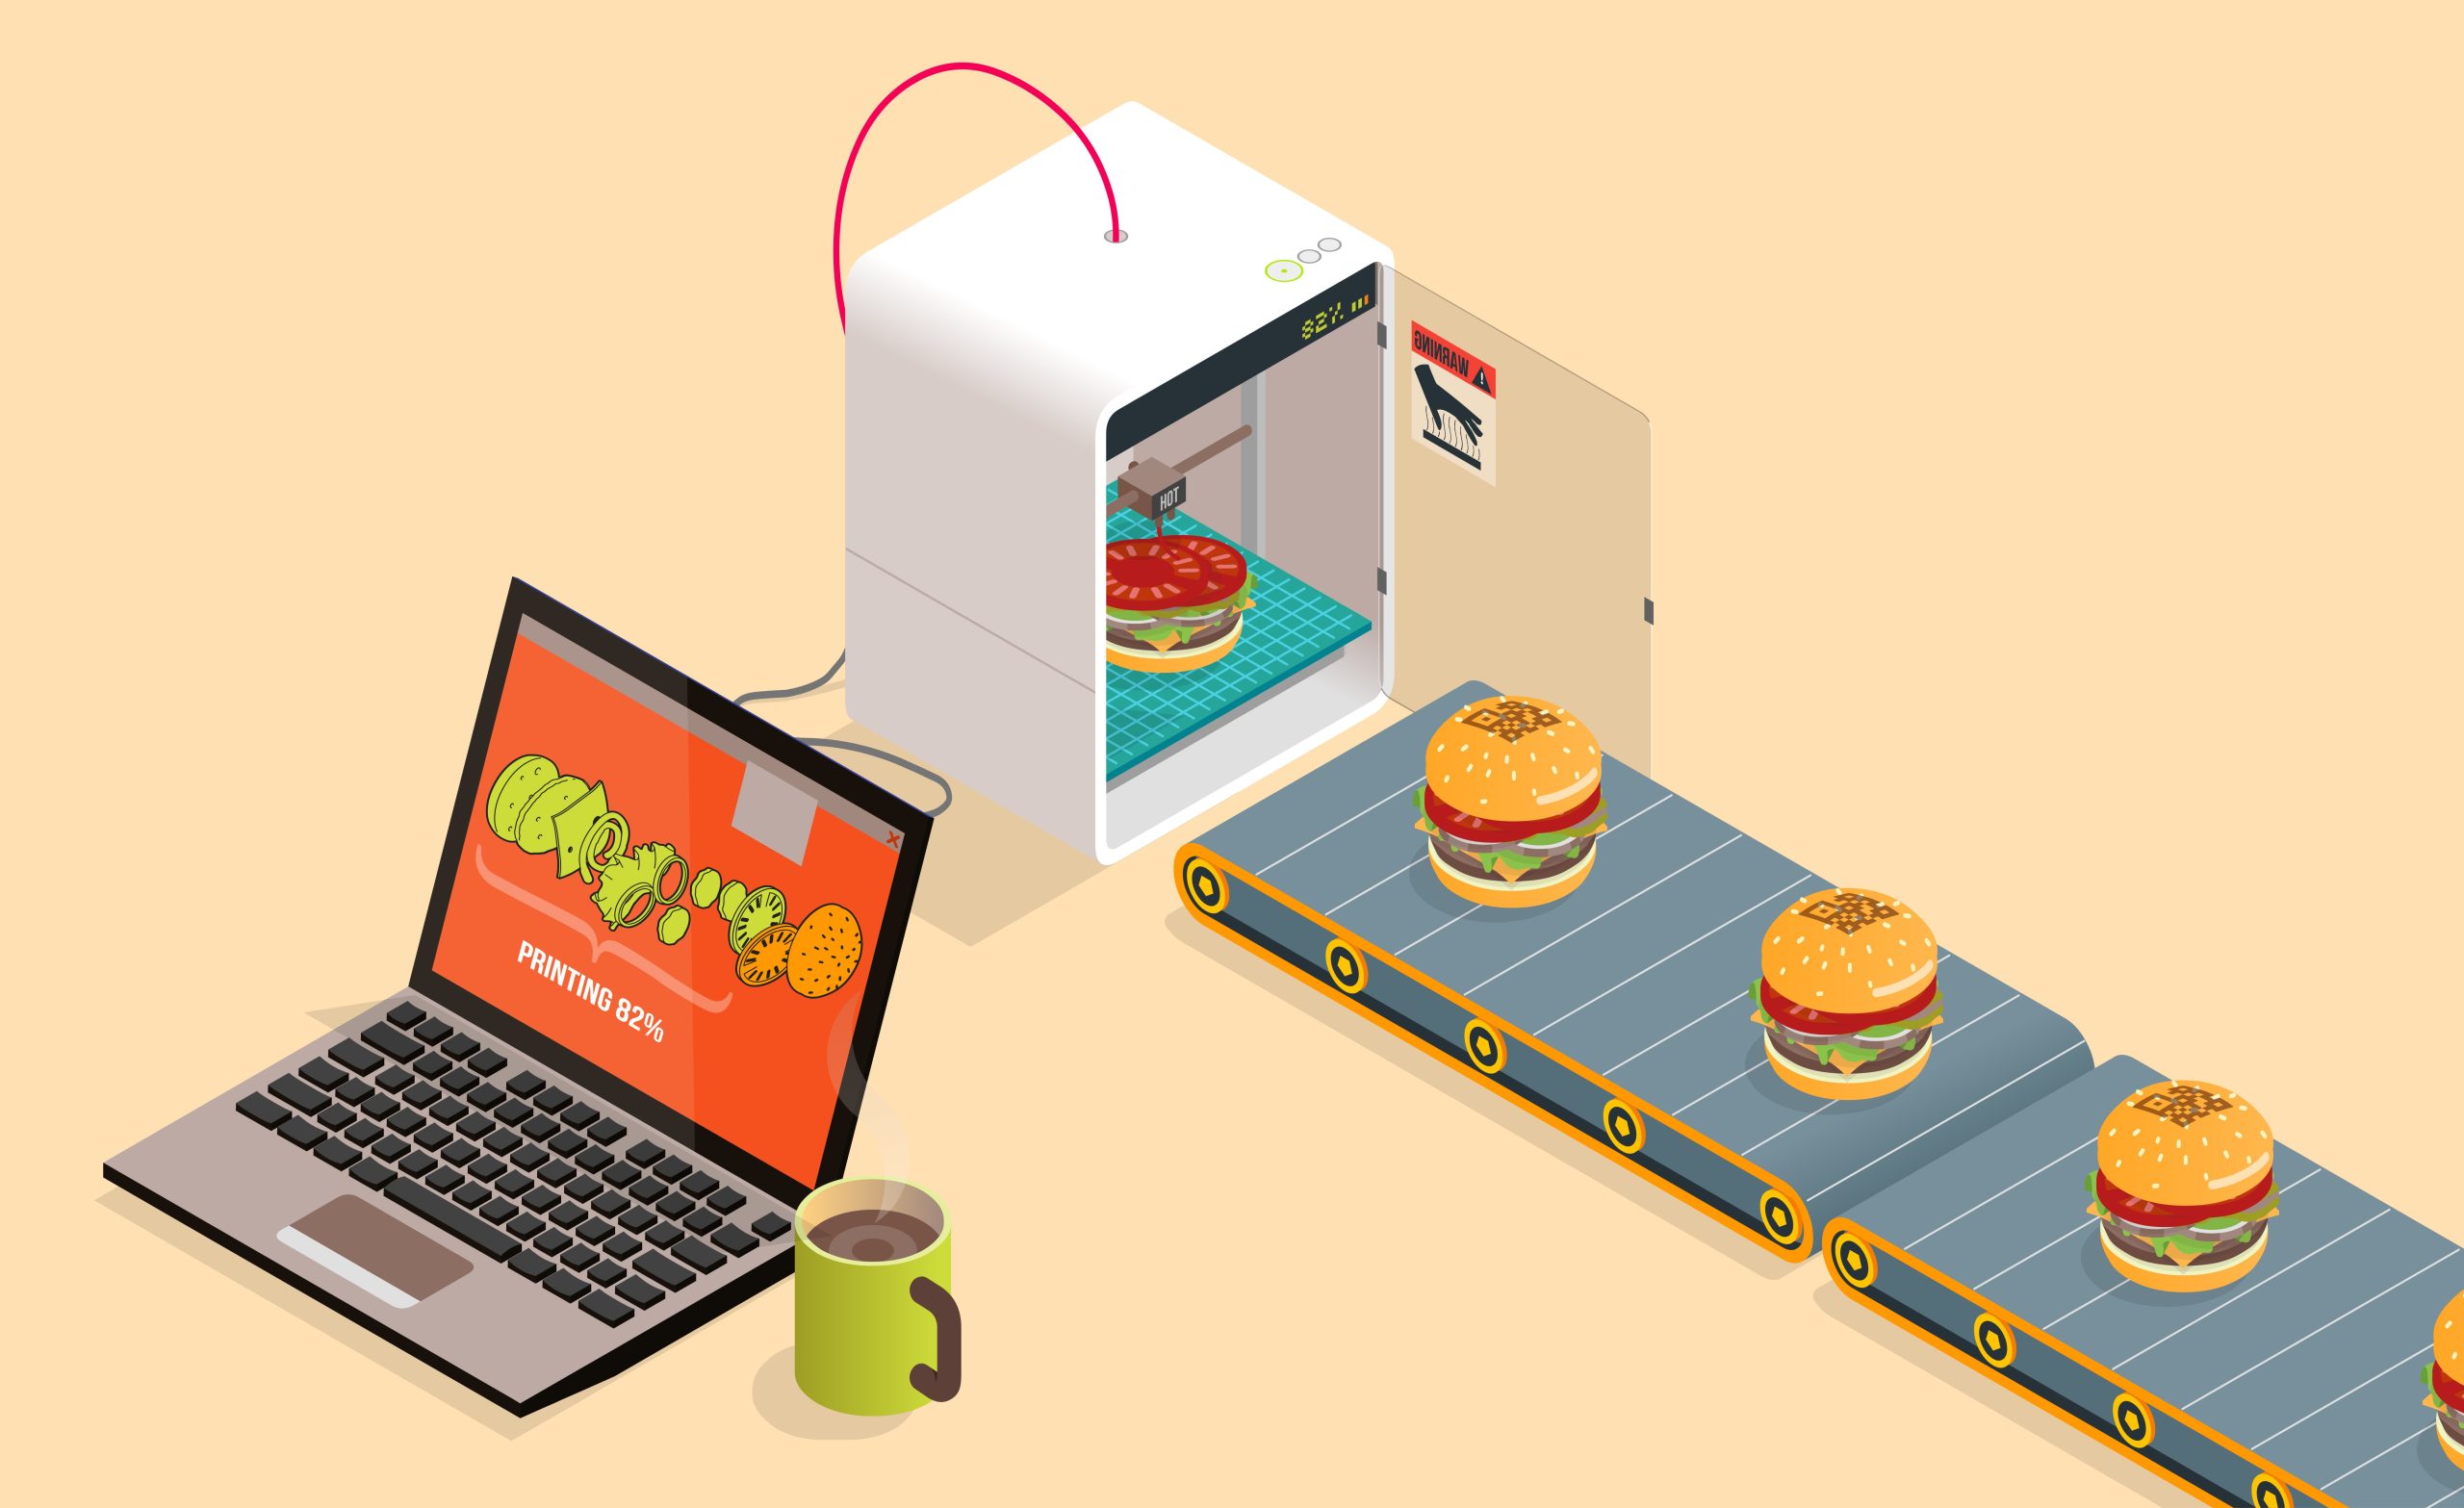 Lire la suite à propos de l’article La Food 3D – une innovation viable ou un prototype sans lendemain